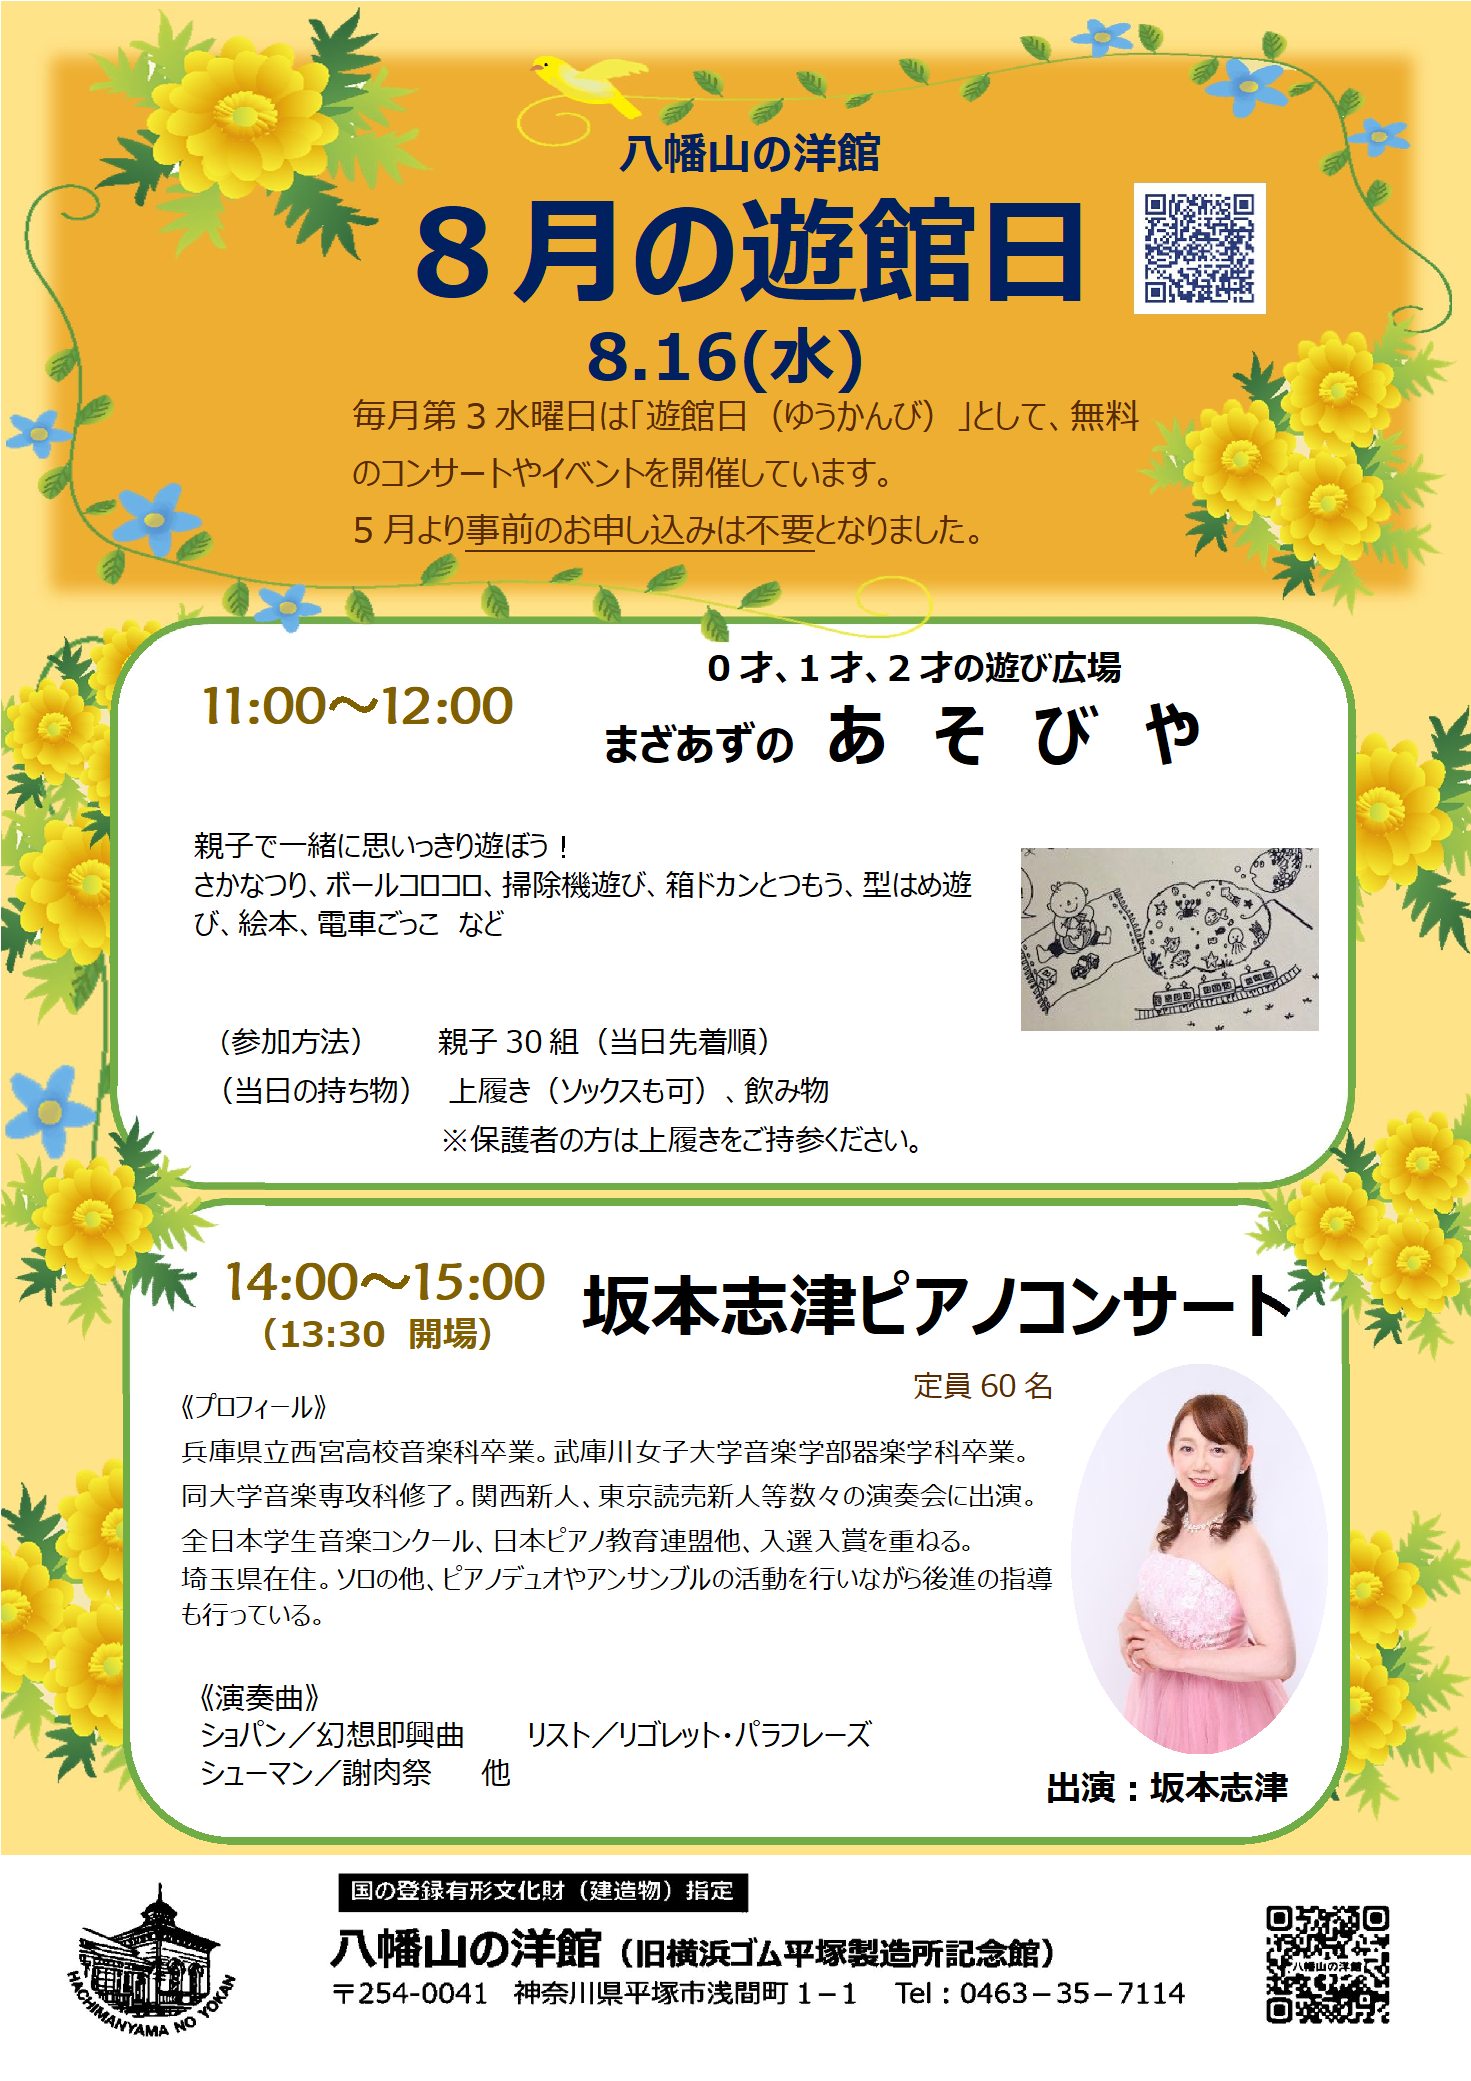 八幡山の洋館 8月遊館日のポスター 午前は「まざあずのあそびや」、午後は「坂本志津ピアノコンサート」